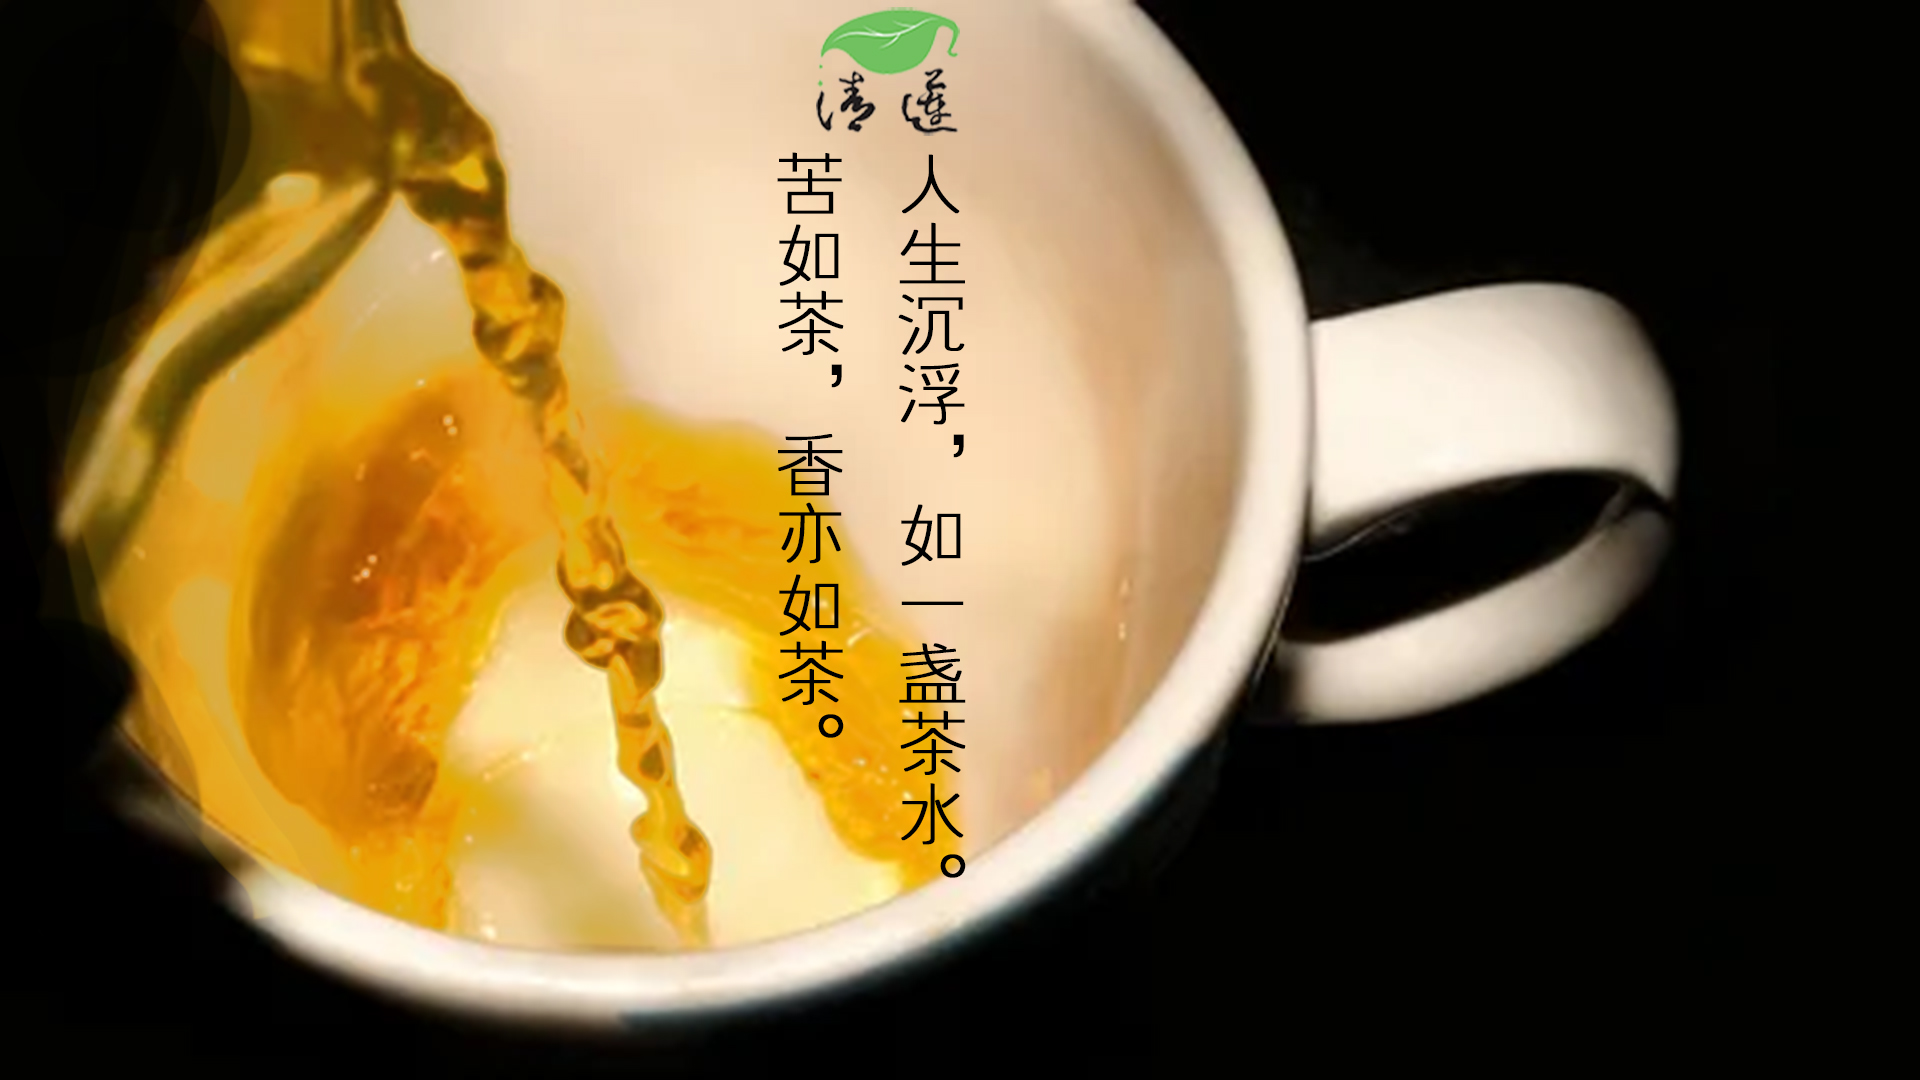 人生沉浮，如一盏茶水 清莲茶话